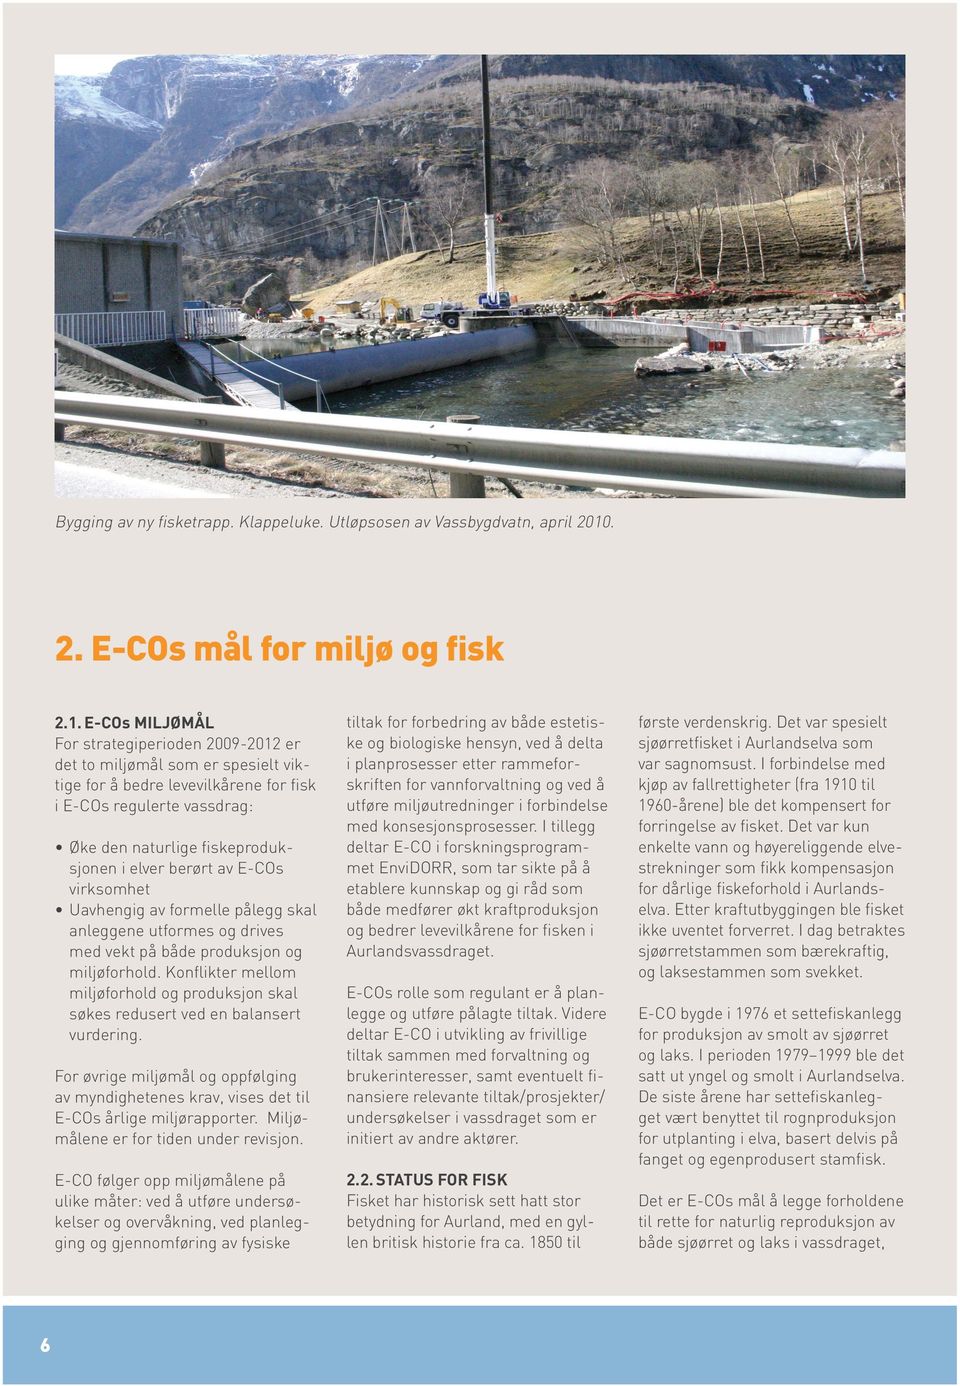 E-COs miljømål For strategiperioden 2009-2012 er det to miljømål som er spesielt viktige for å bedre levevilkårene for fisk i E-COs regulerte vassdrag: Øke den naturlige fiskeproduksjonen i elver